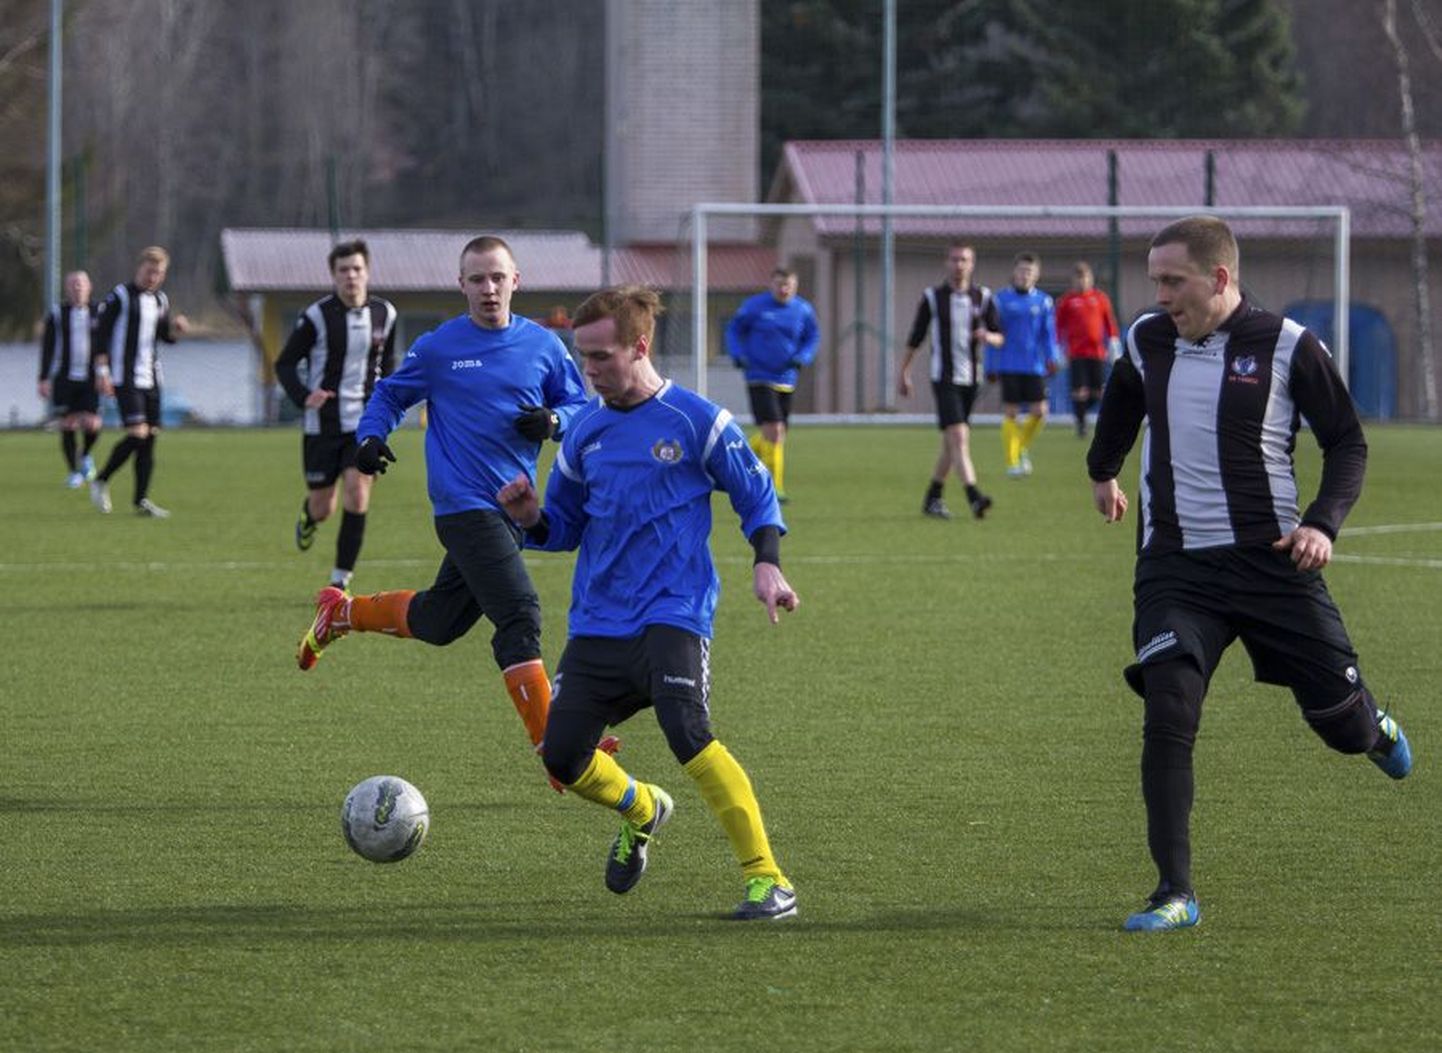 Nädal enne liigahooaja algust tegid Viljandis treeningmängus 3:3 viigi Tuleviku II (sinises vormis) ja SK Tääksi.